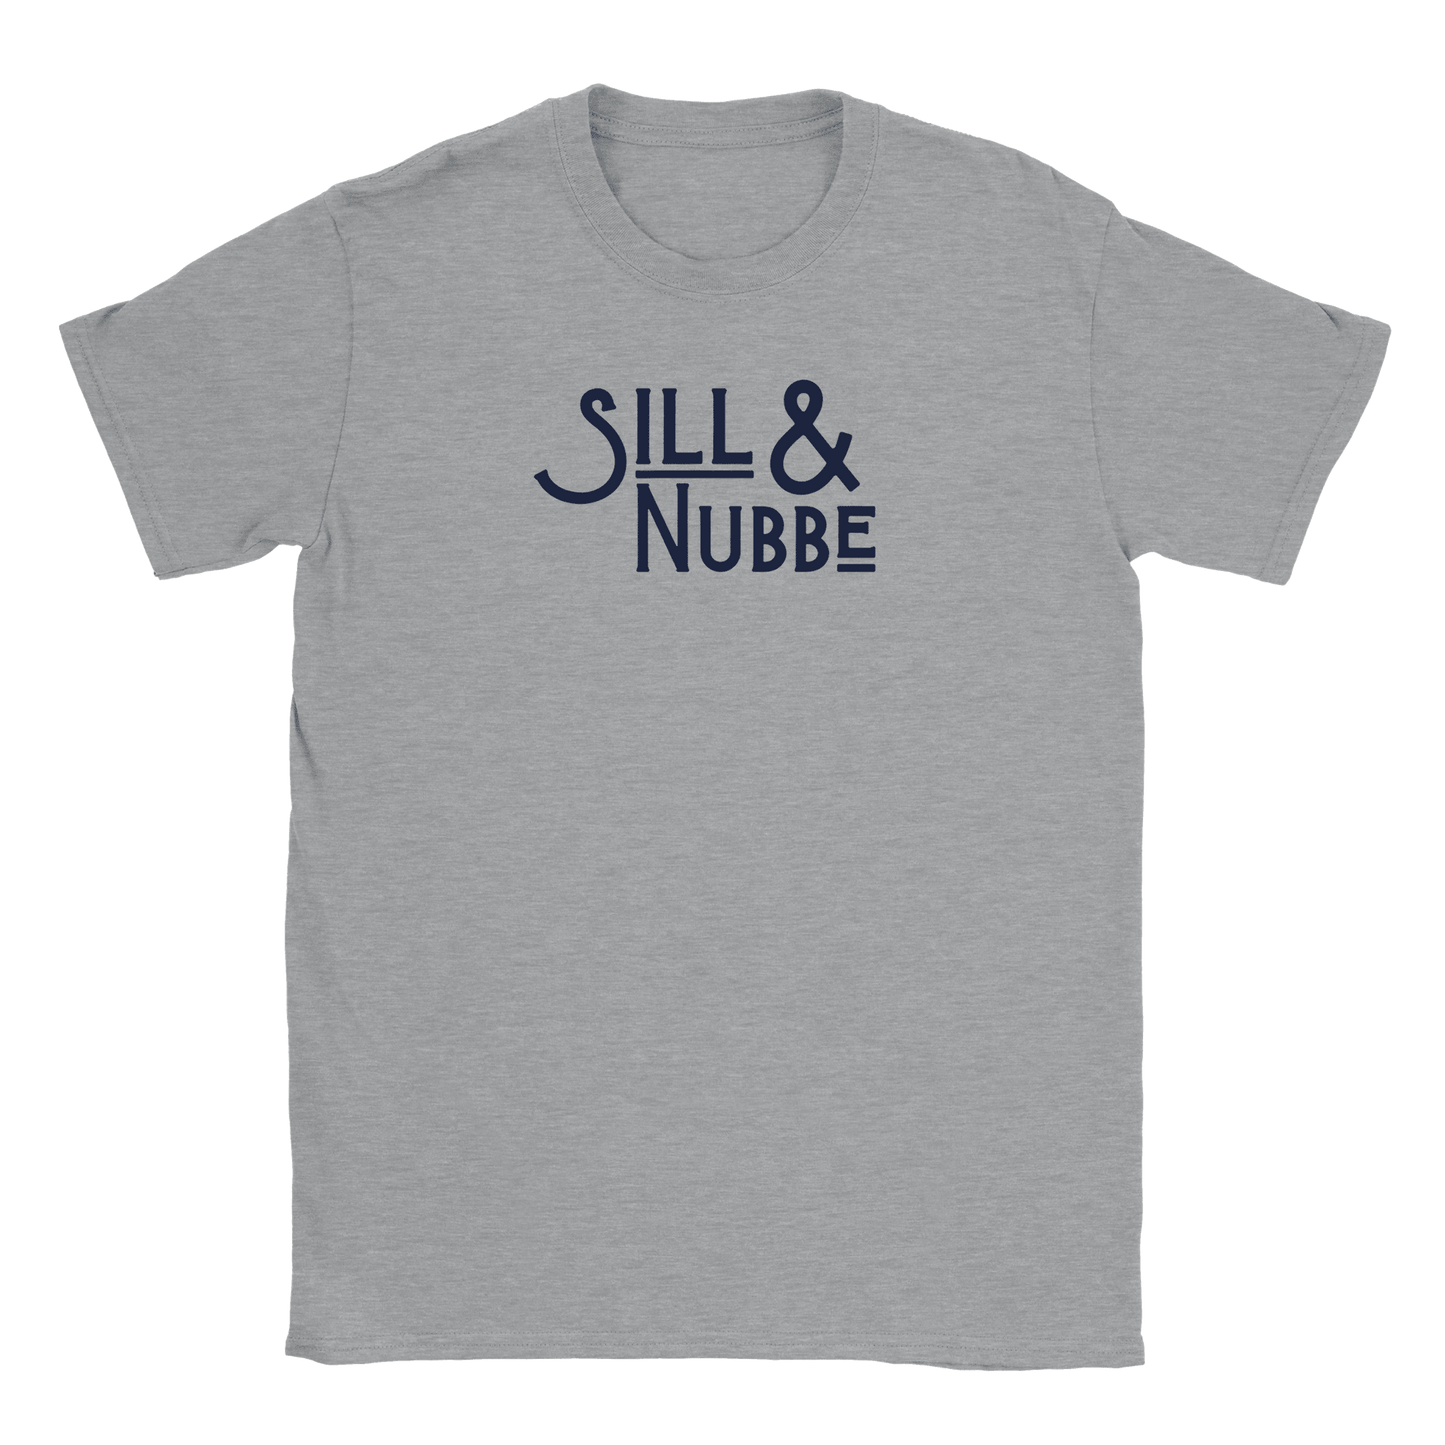 Sill & Nubbe - T-shirt Grå